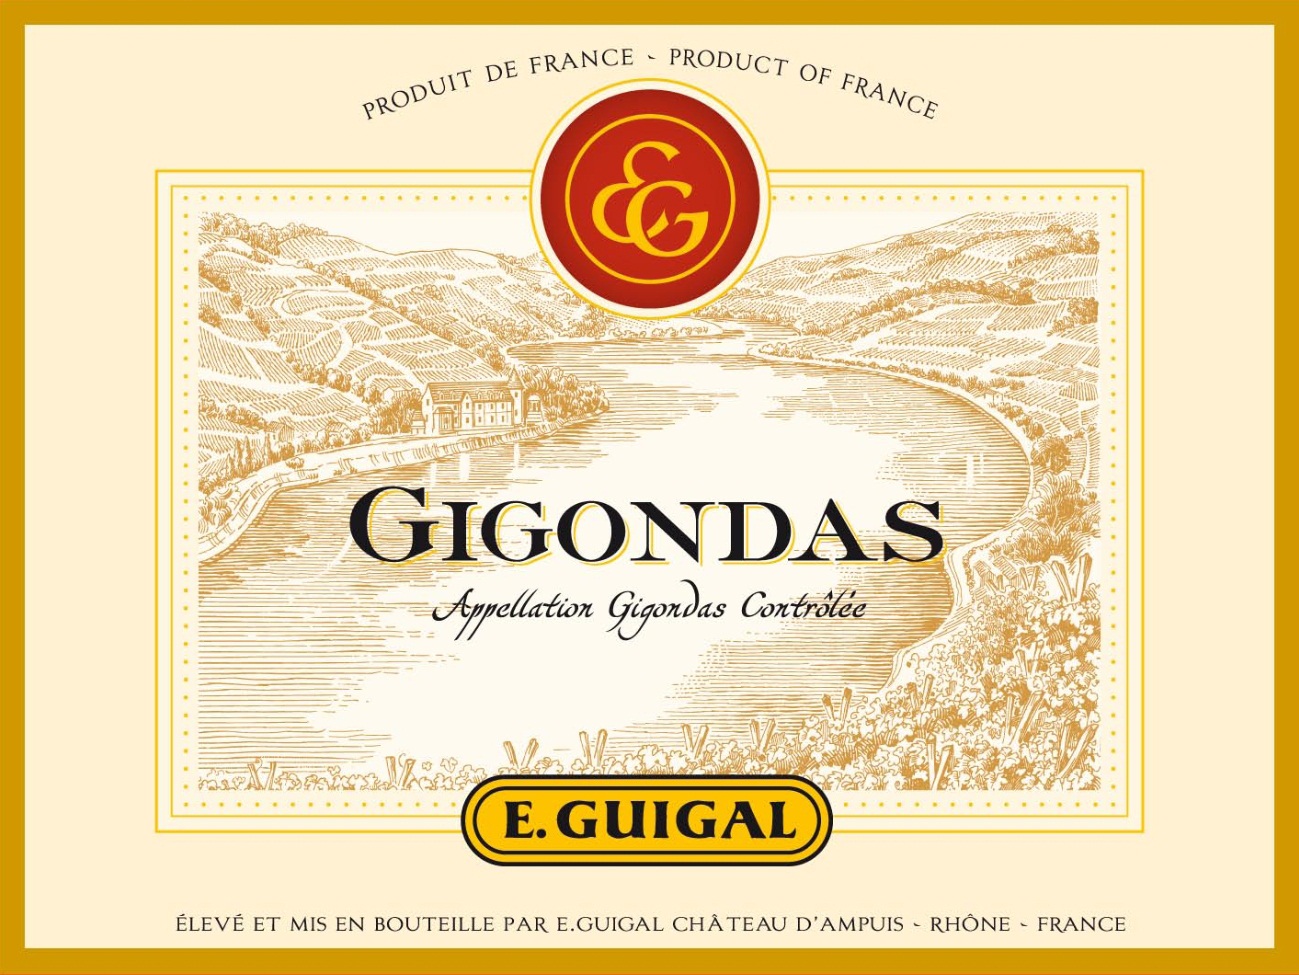 E. Guigal - Gigondas label